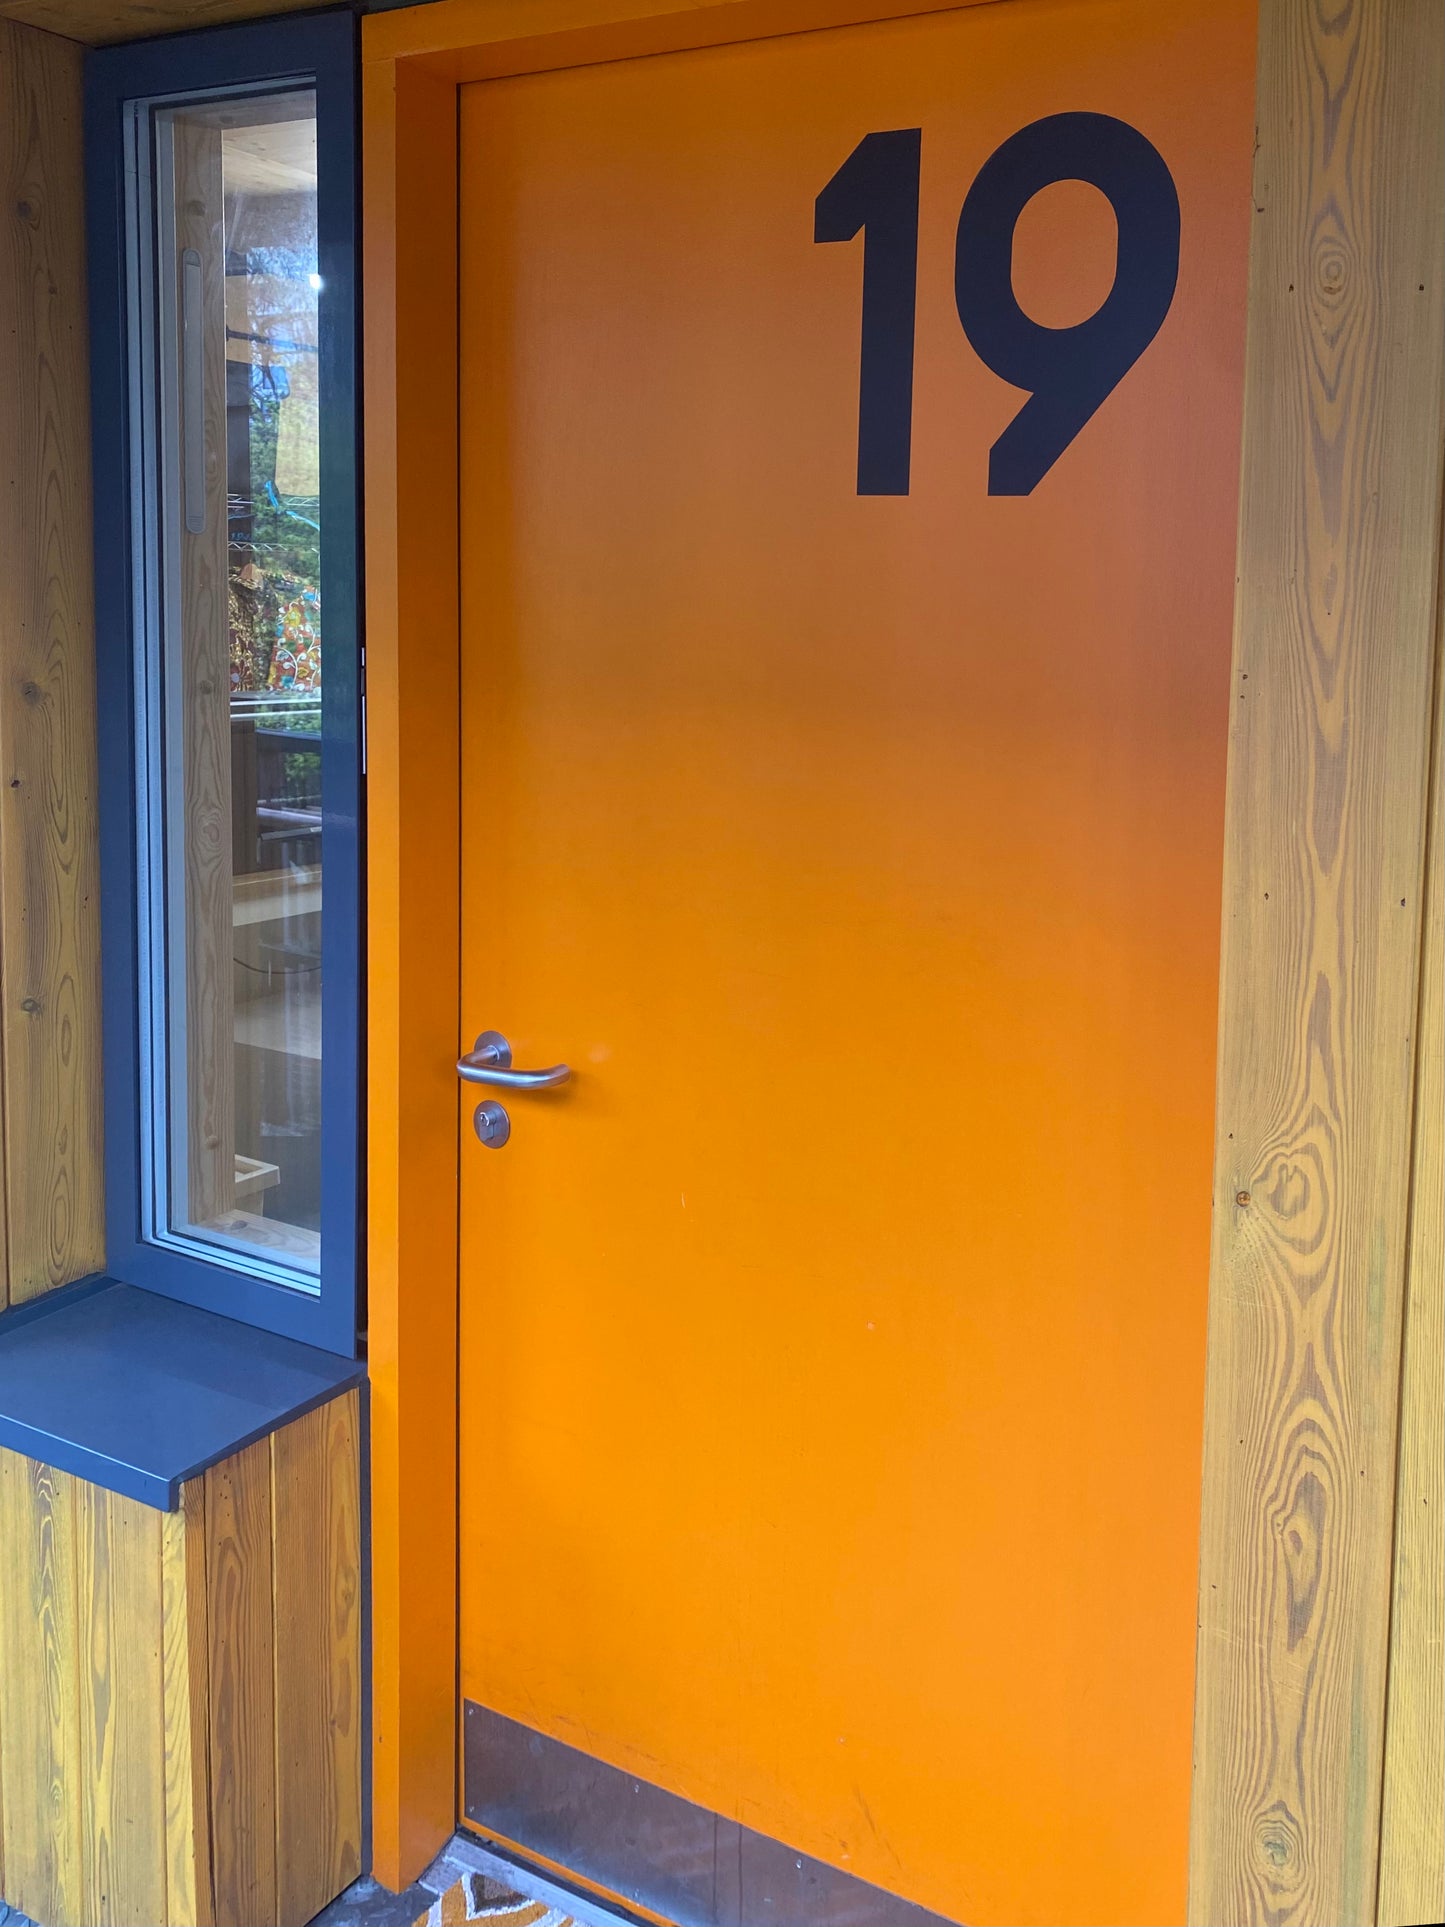 unit 19 orange door